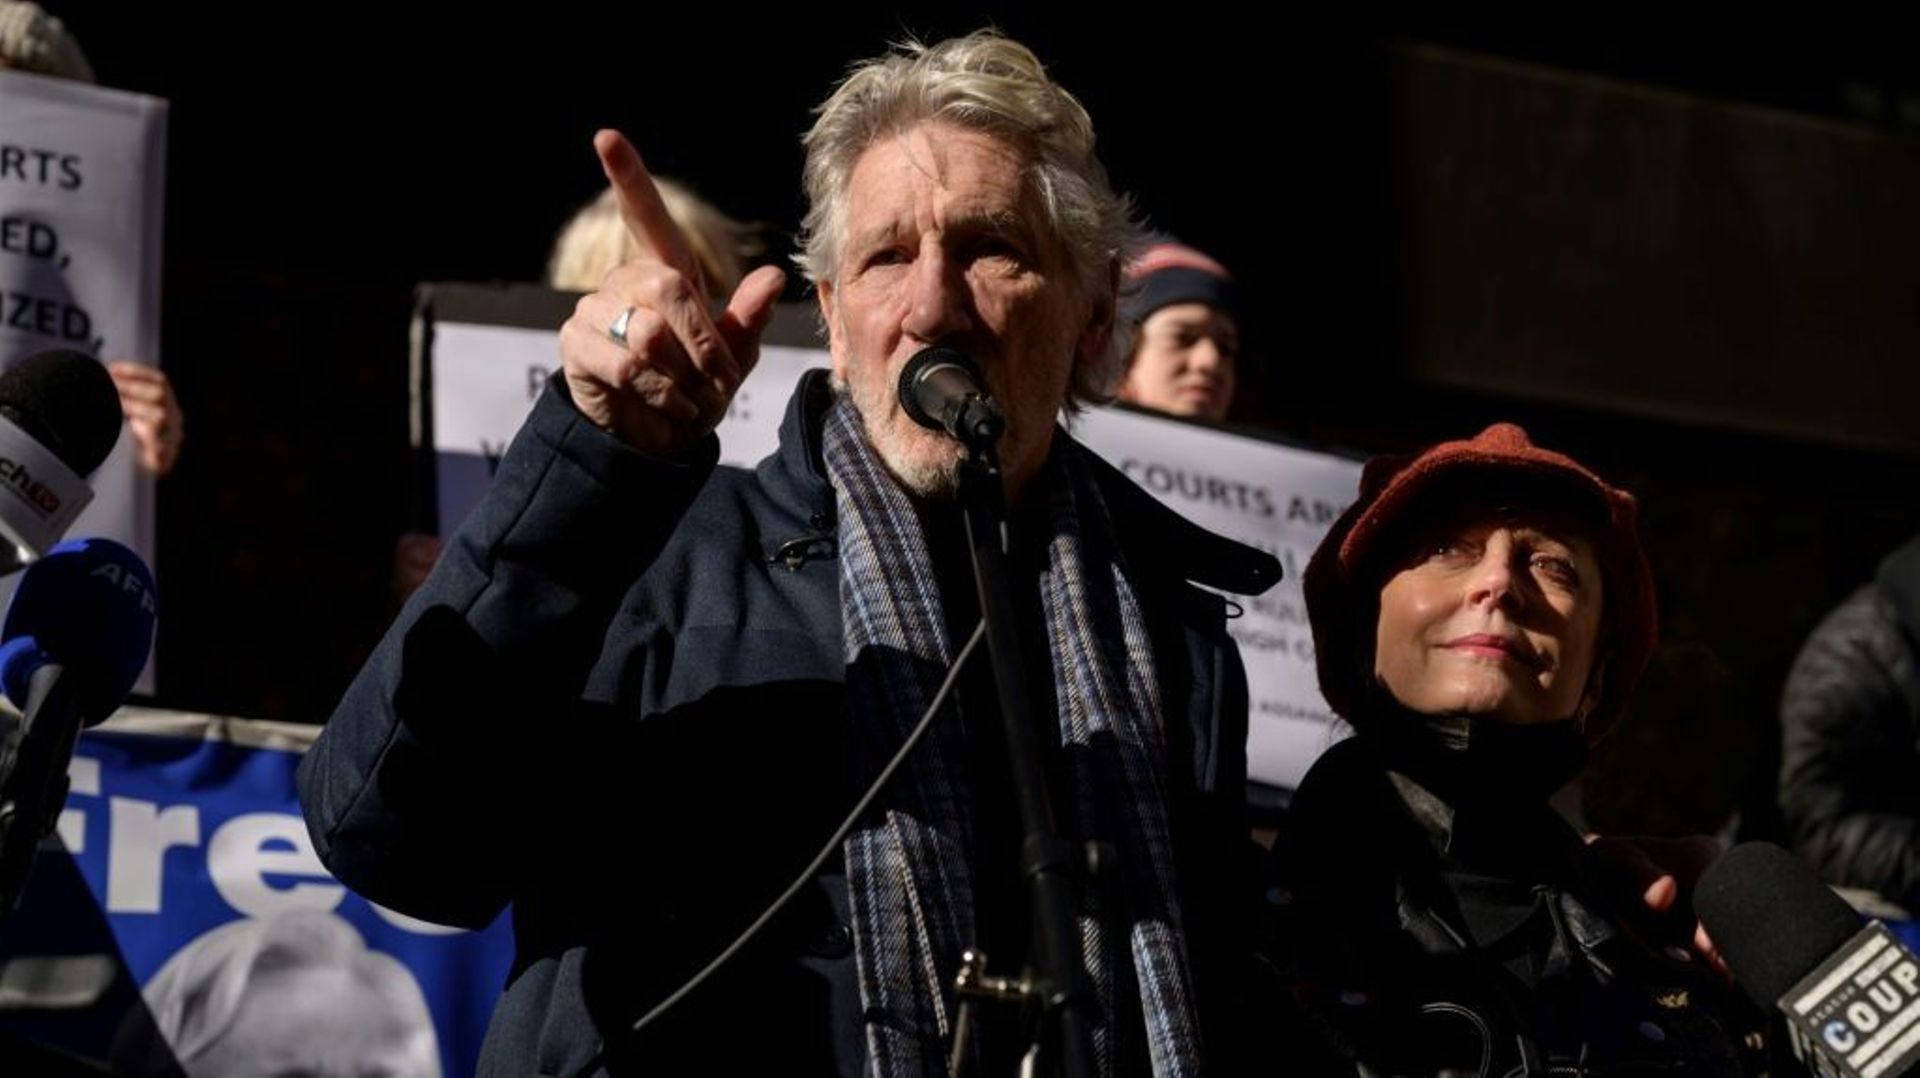 Le musicien britannique Roger Waters et l'actrice américaine Susan Sarandon manifestent le 13 décembre 2021 à New York devant le consulat britannique contre le processus d'extradition vers les Etats-Unis du fondateur de WikiLeaks Julian Assange